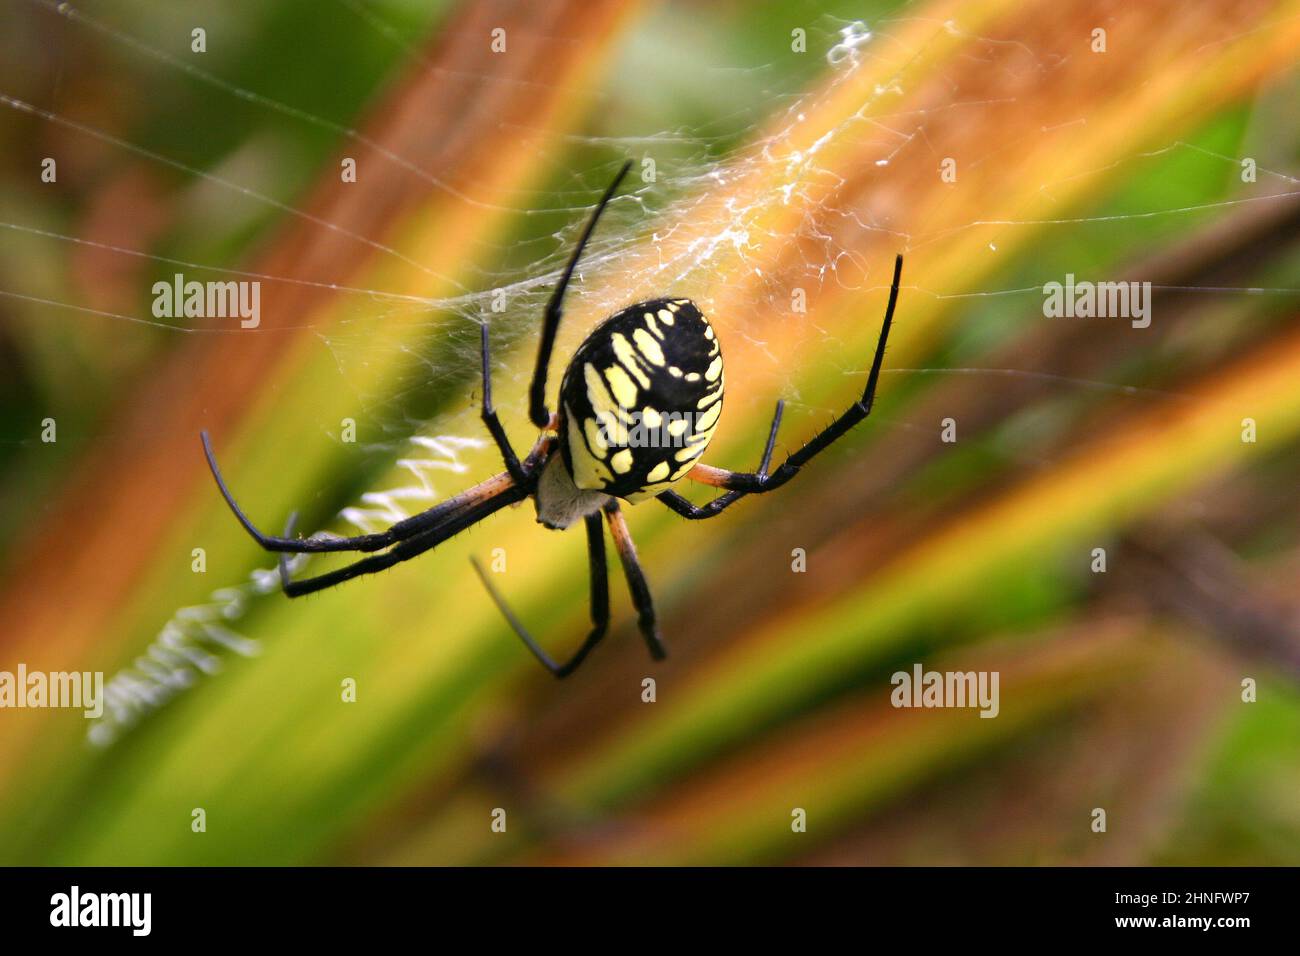 Primer plano de una araña orbe dorada con una marcada y brillante trama de una red mortal dentro de una densa filiedad Foto de stock